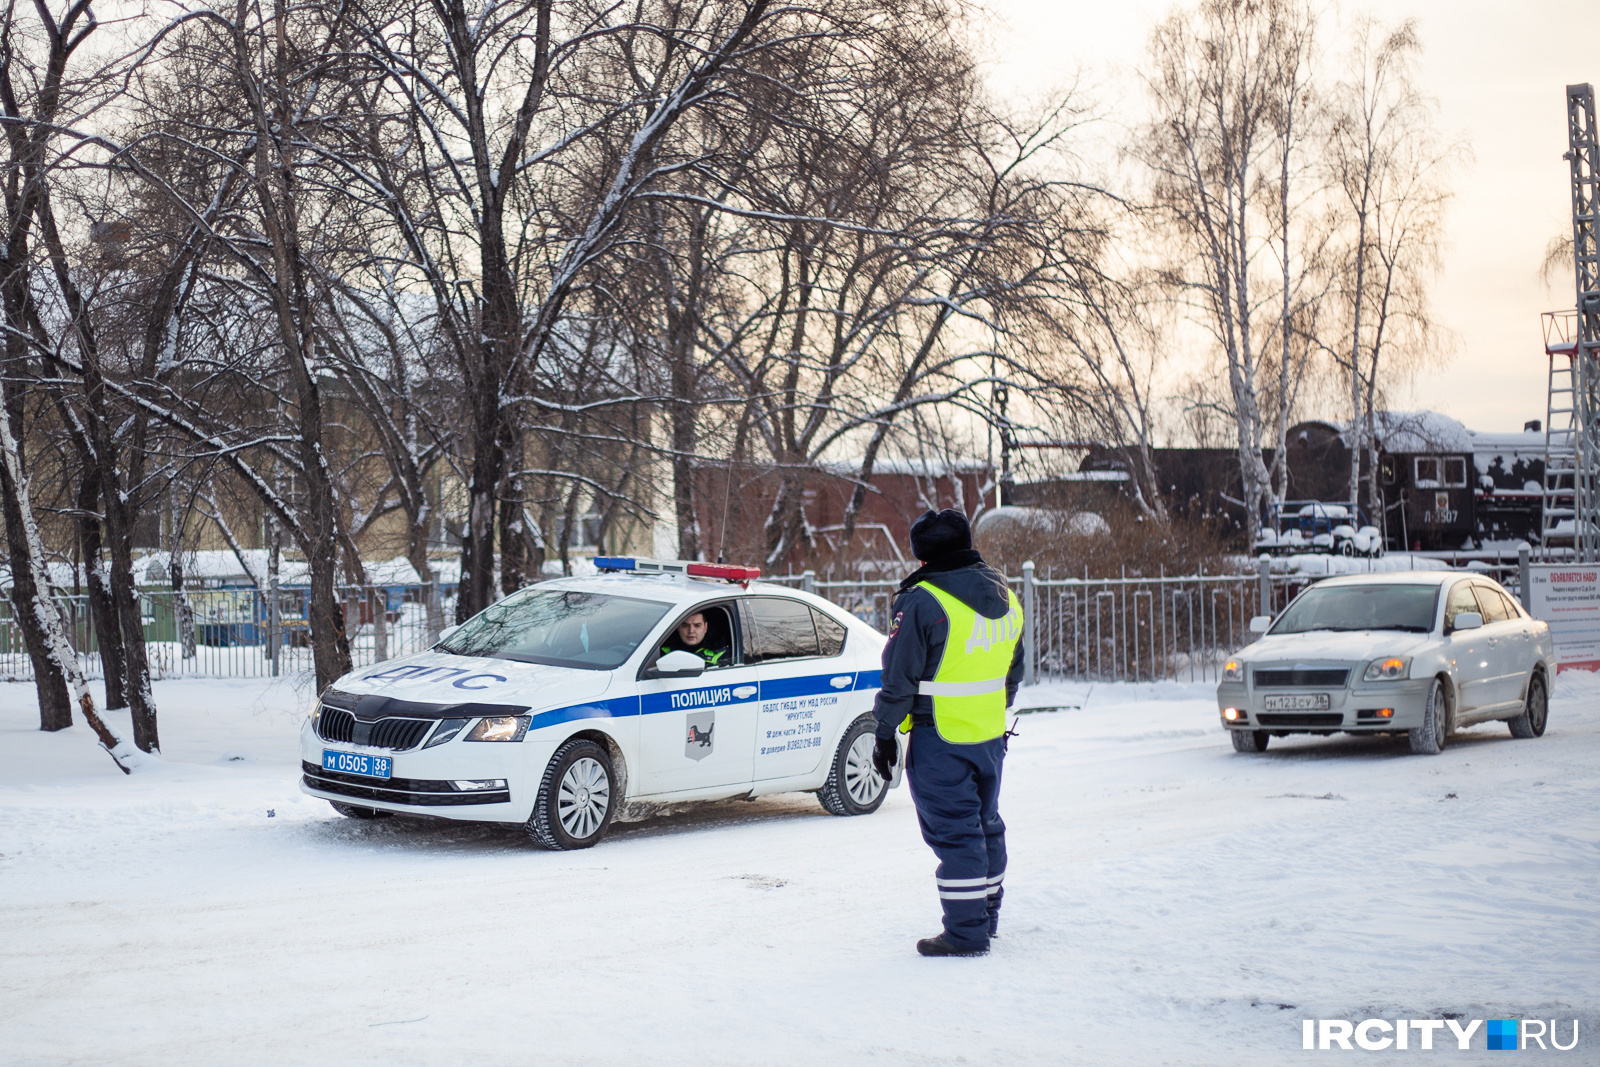 Жителя Заларинского района задержали по подозрению в летальном ДТП с пешеходом